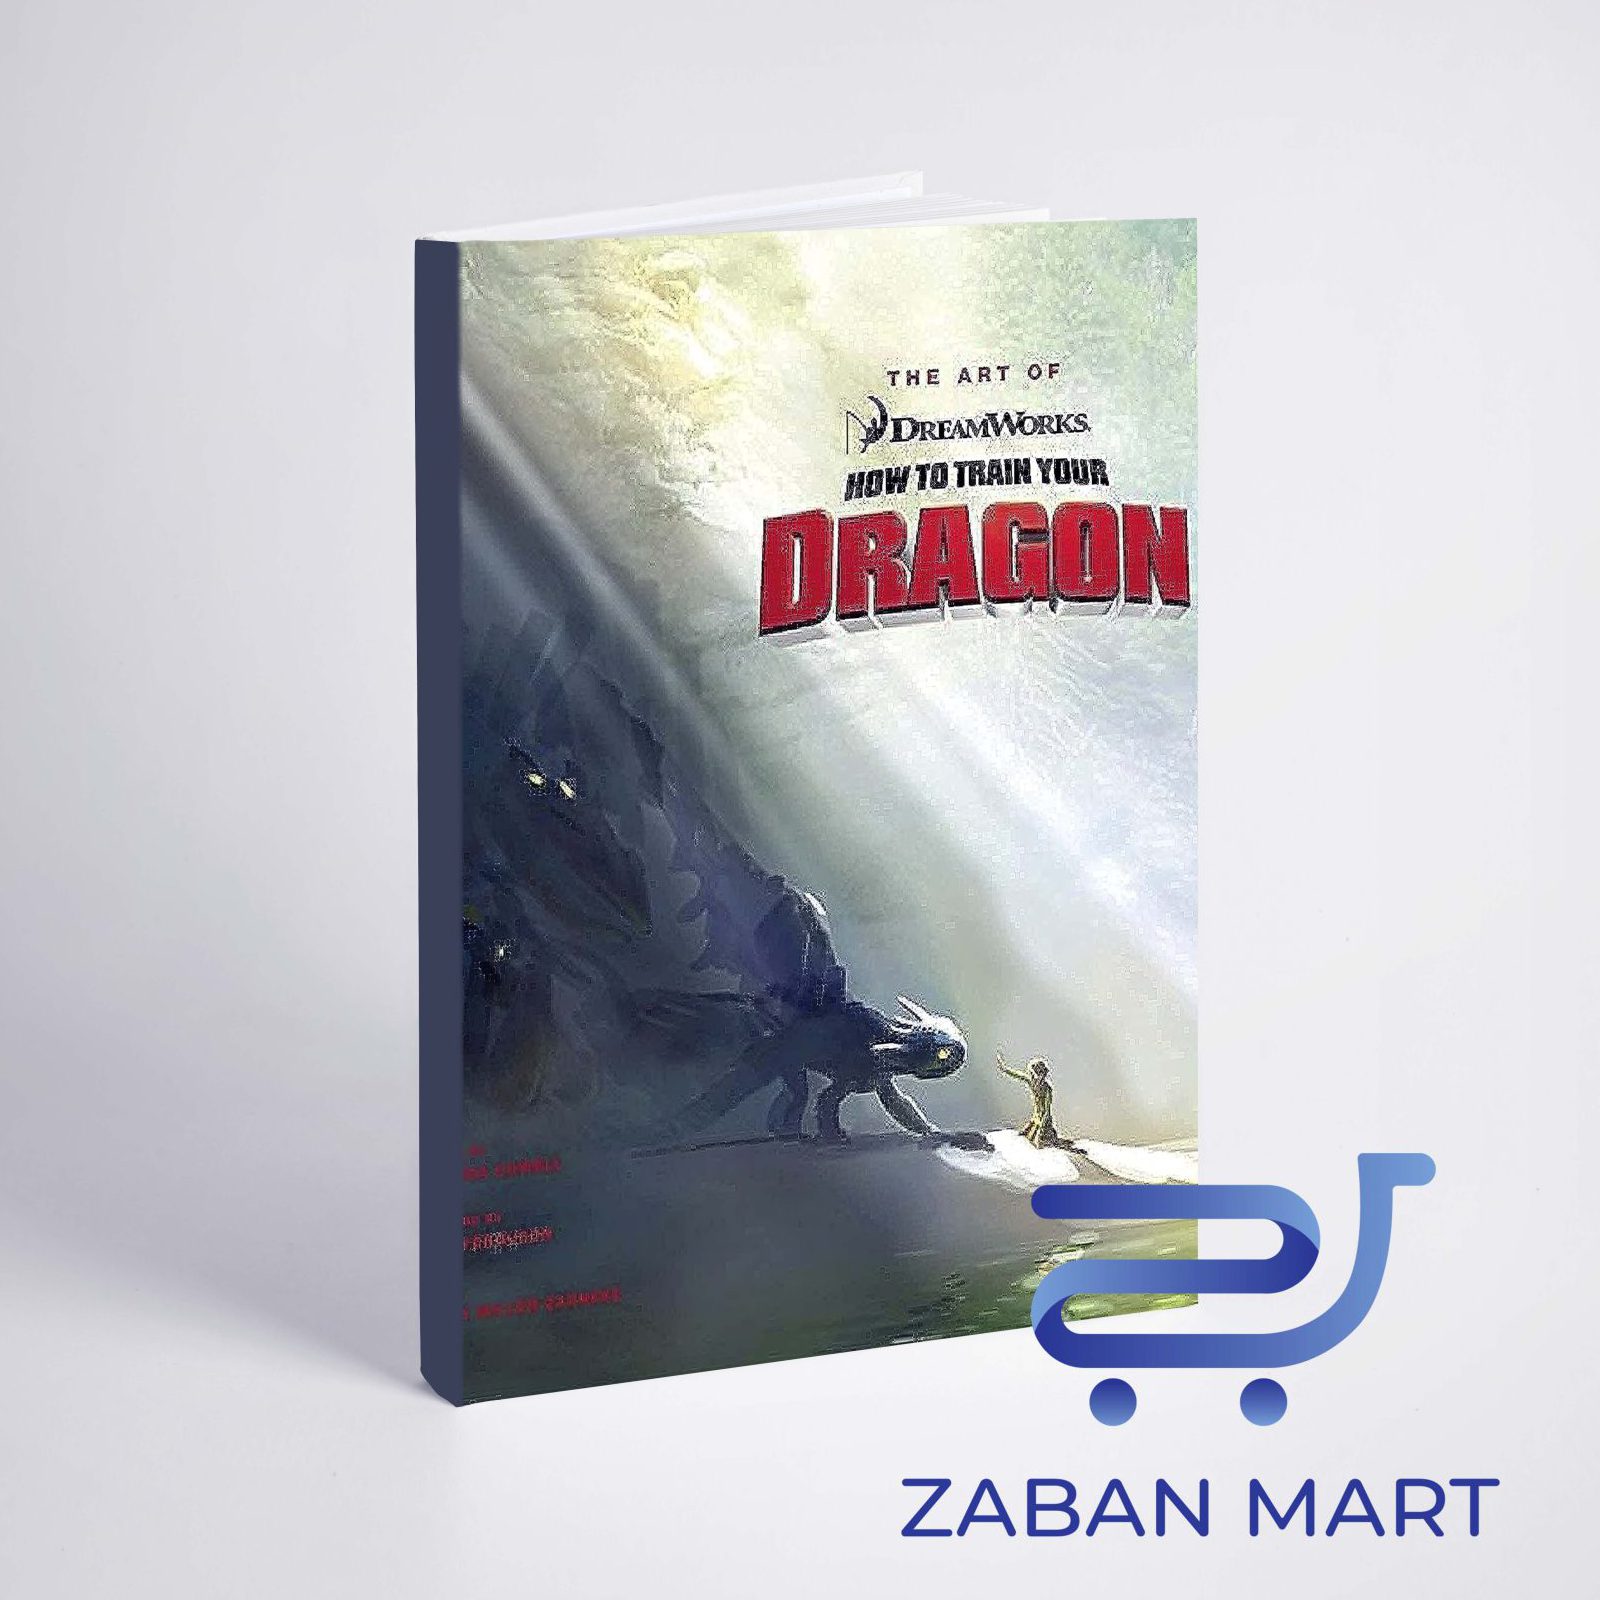 خرید آرت بوک مربی اژدها The Art of How to Train Your Dragon از کتابفروشی اینترنتی زبان مارت